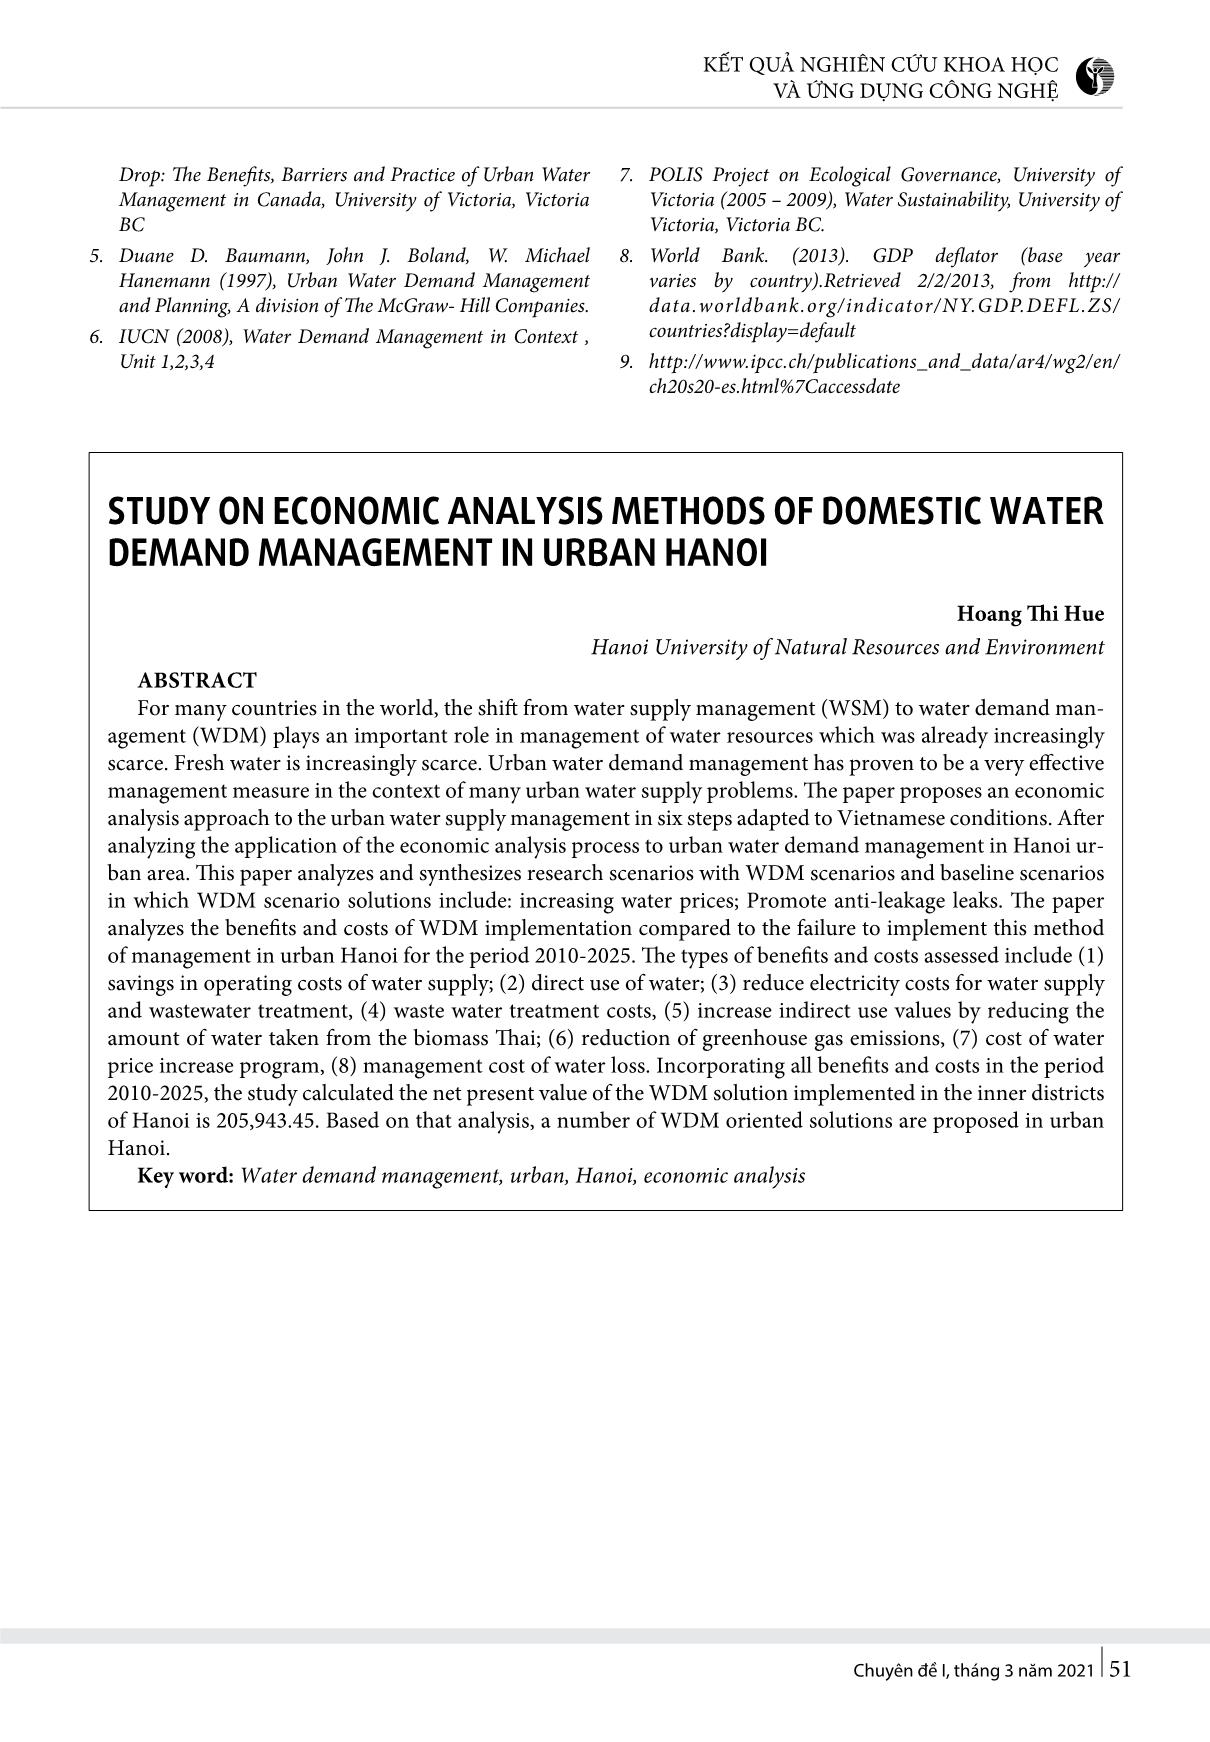 Phân tích kinh tế phương thức quản lý cầu nước sinh hoạt tại đô thị Hà Nội trang 8